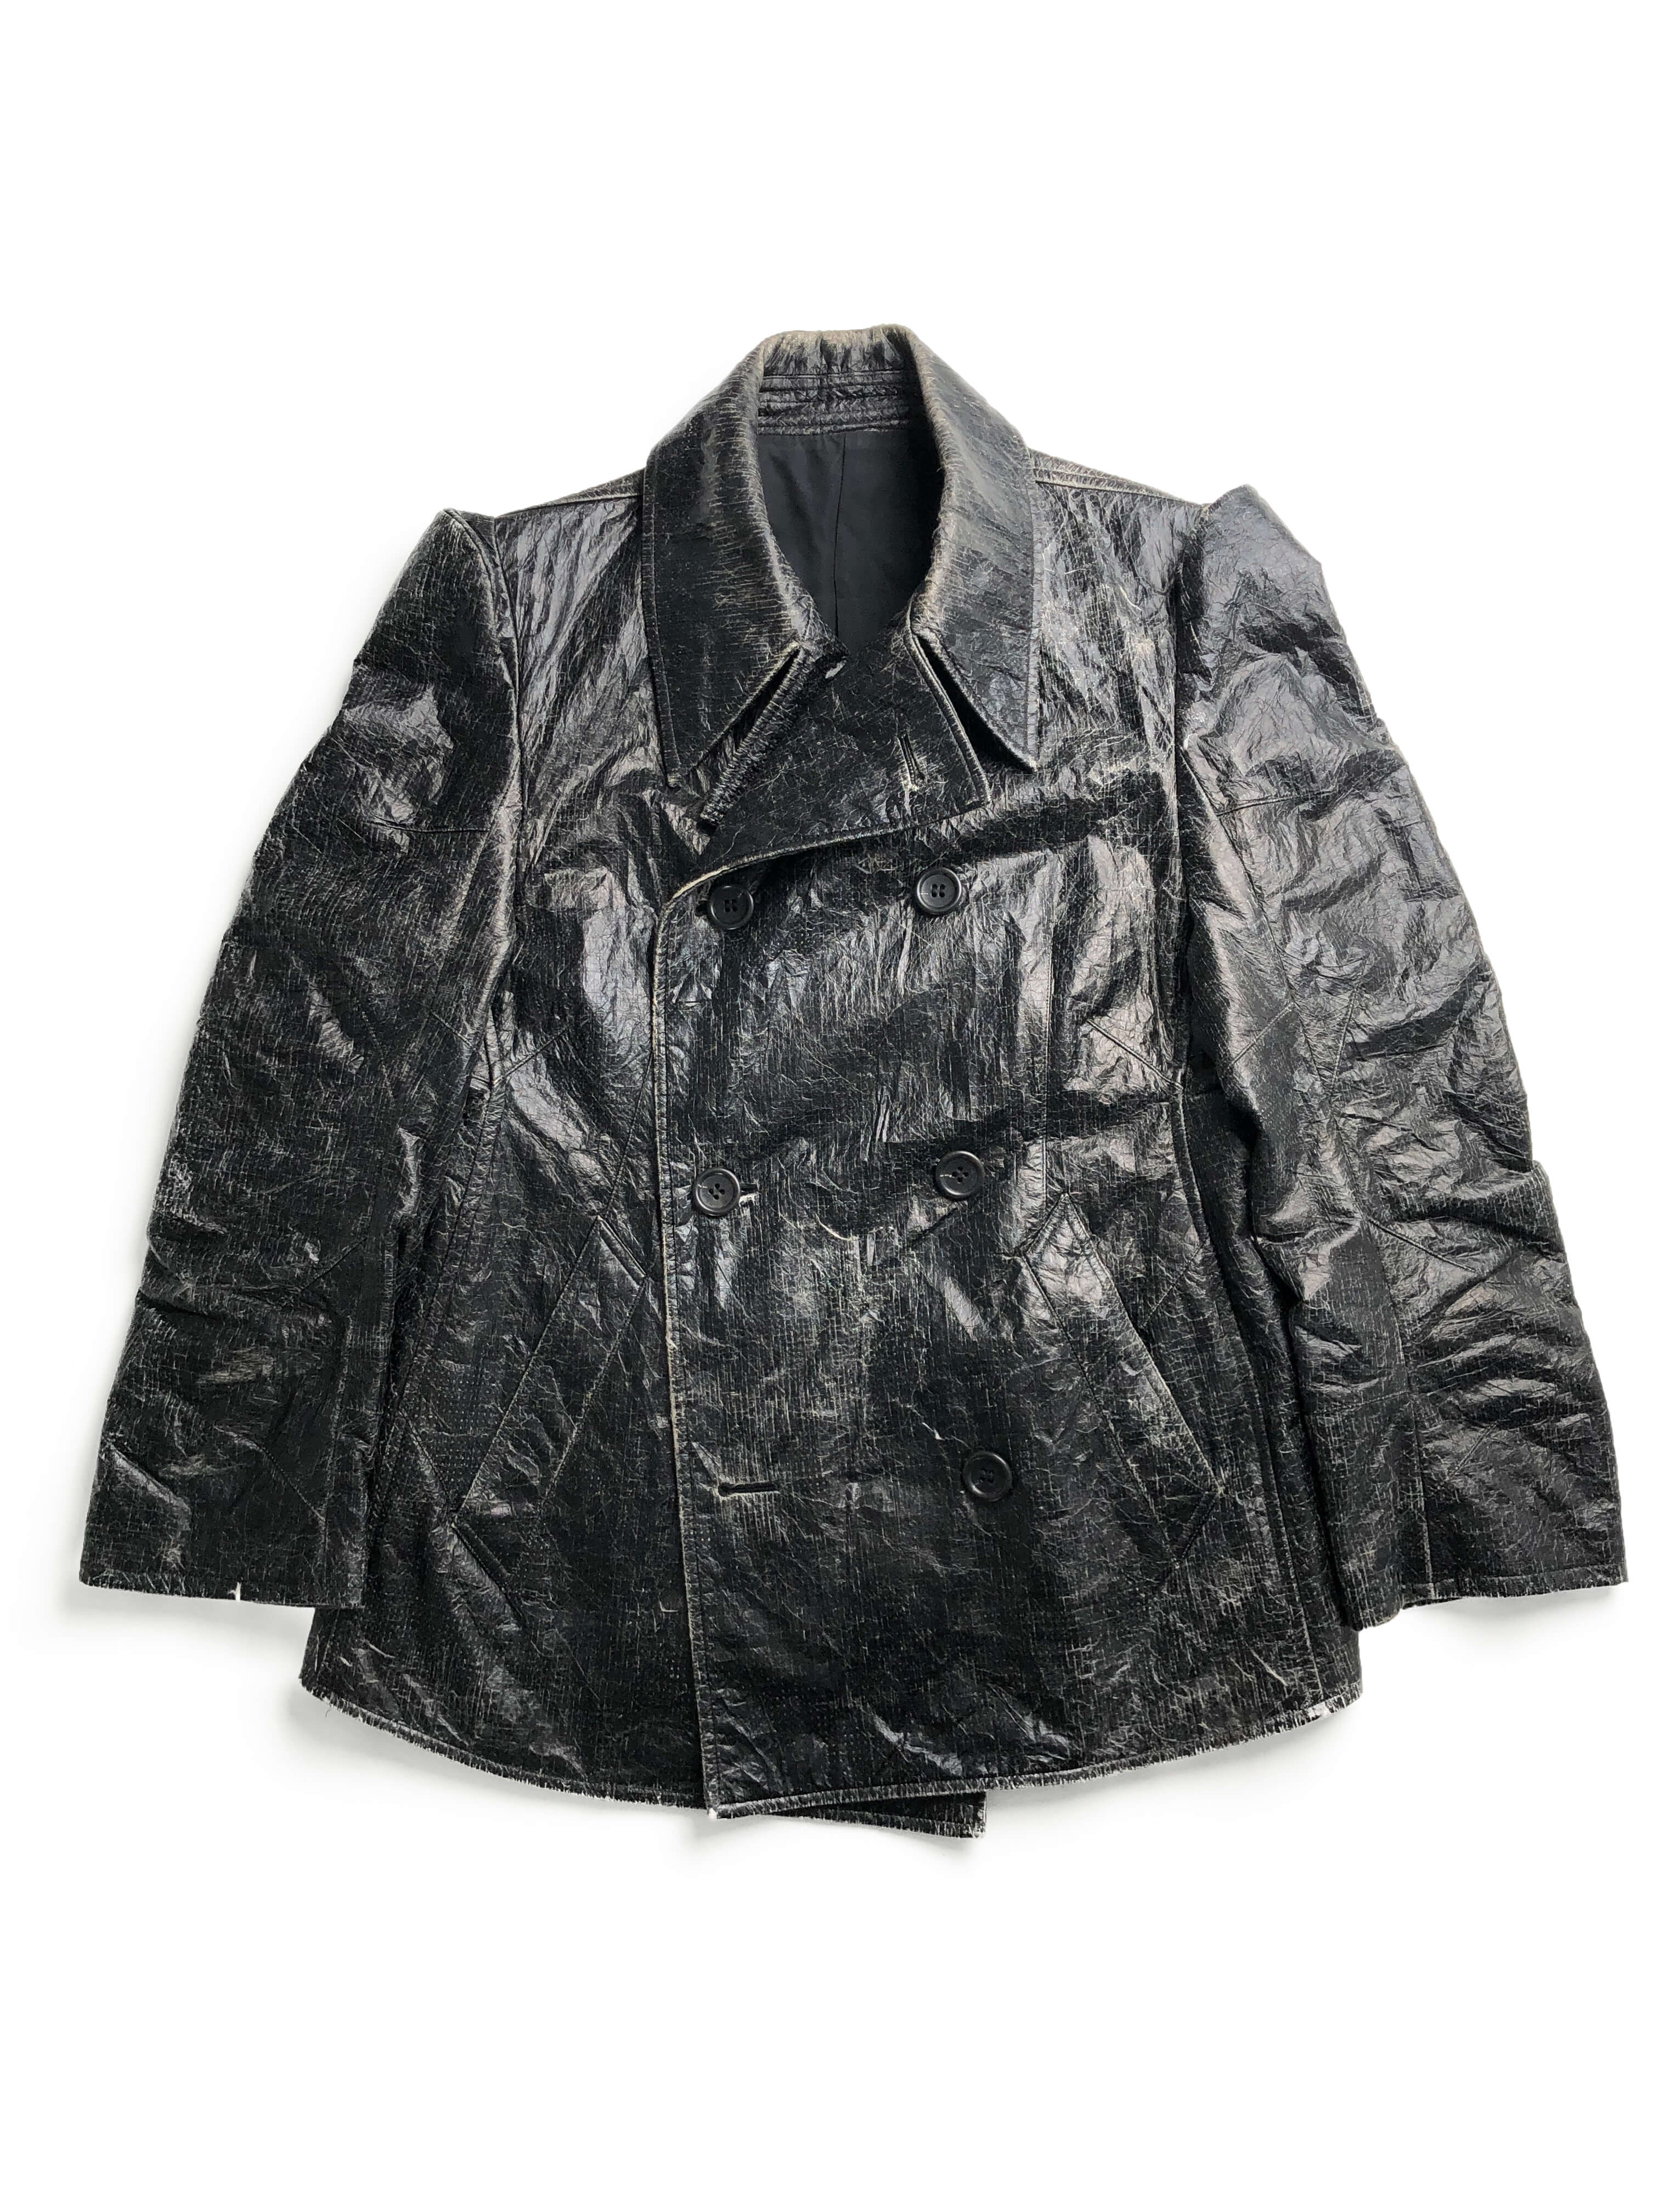 MASAKI MATSUSHIMA crack jacket